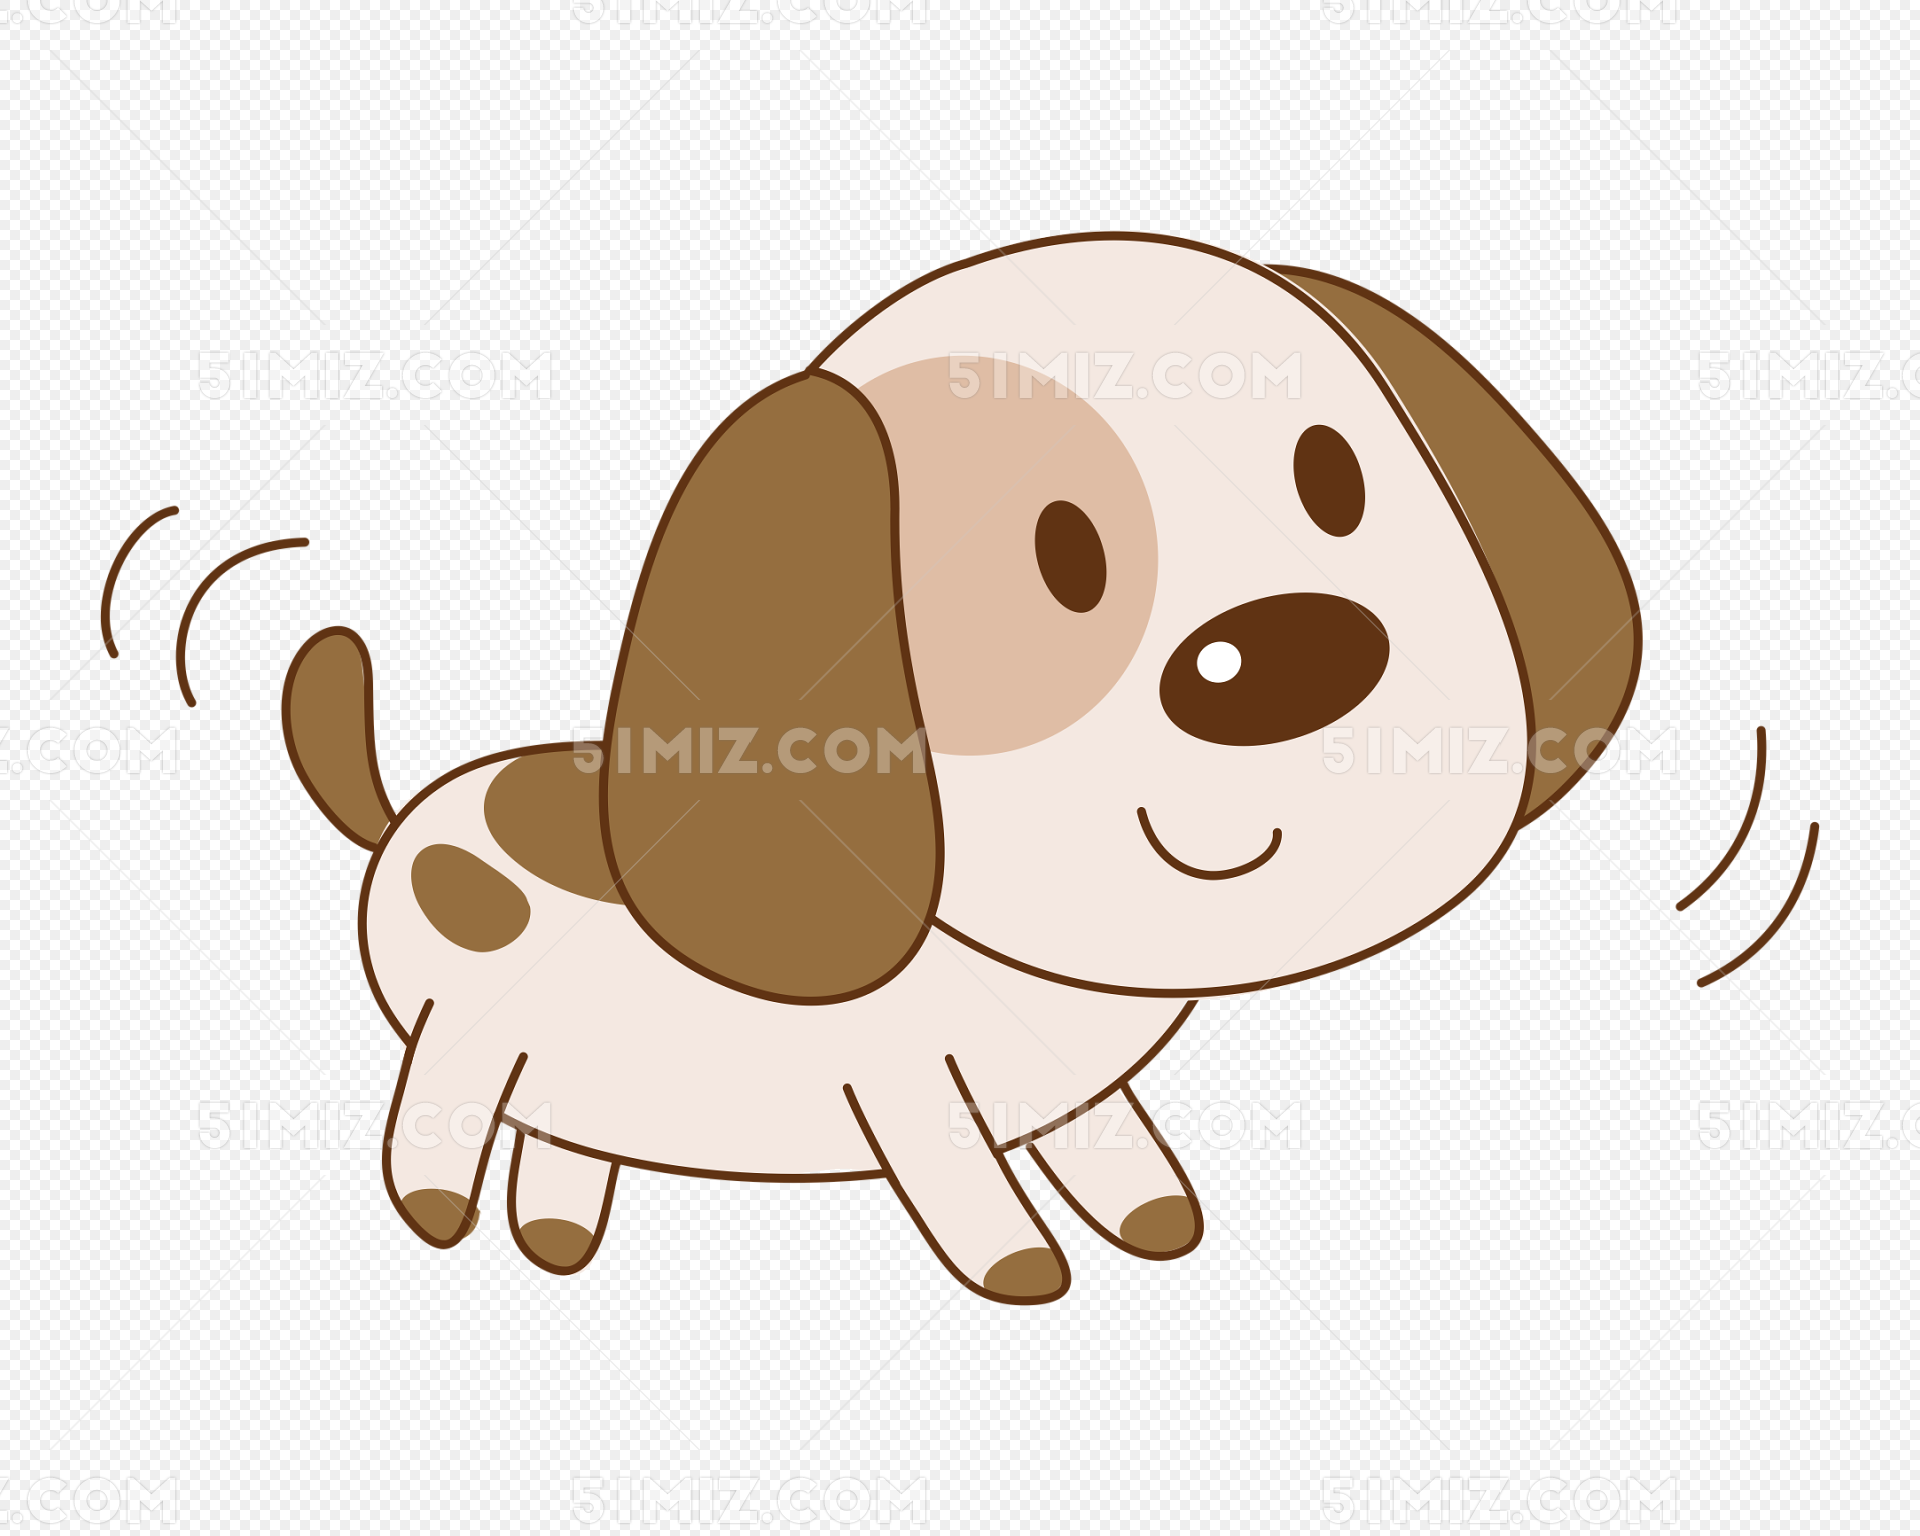 可愛的小狗PSD圖案素材免費下載 - 尺寸5017 × 3543px - 圖形ID401484459 - Lovepik